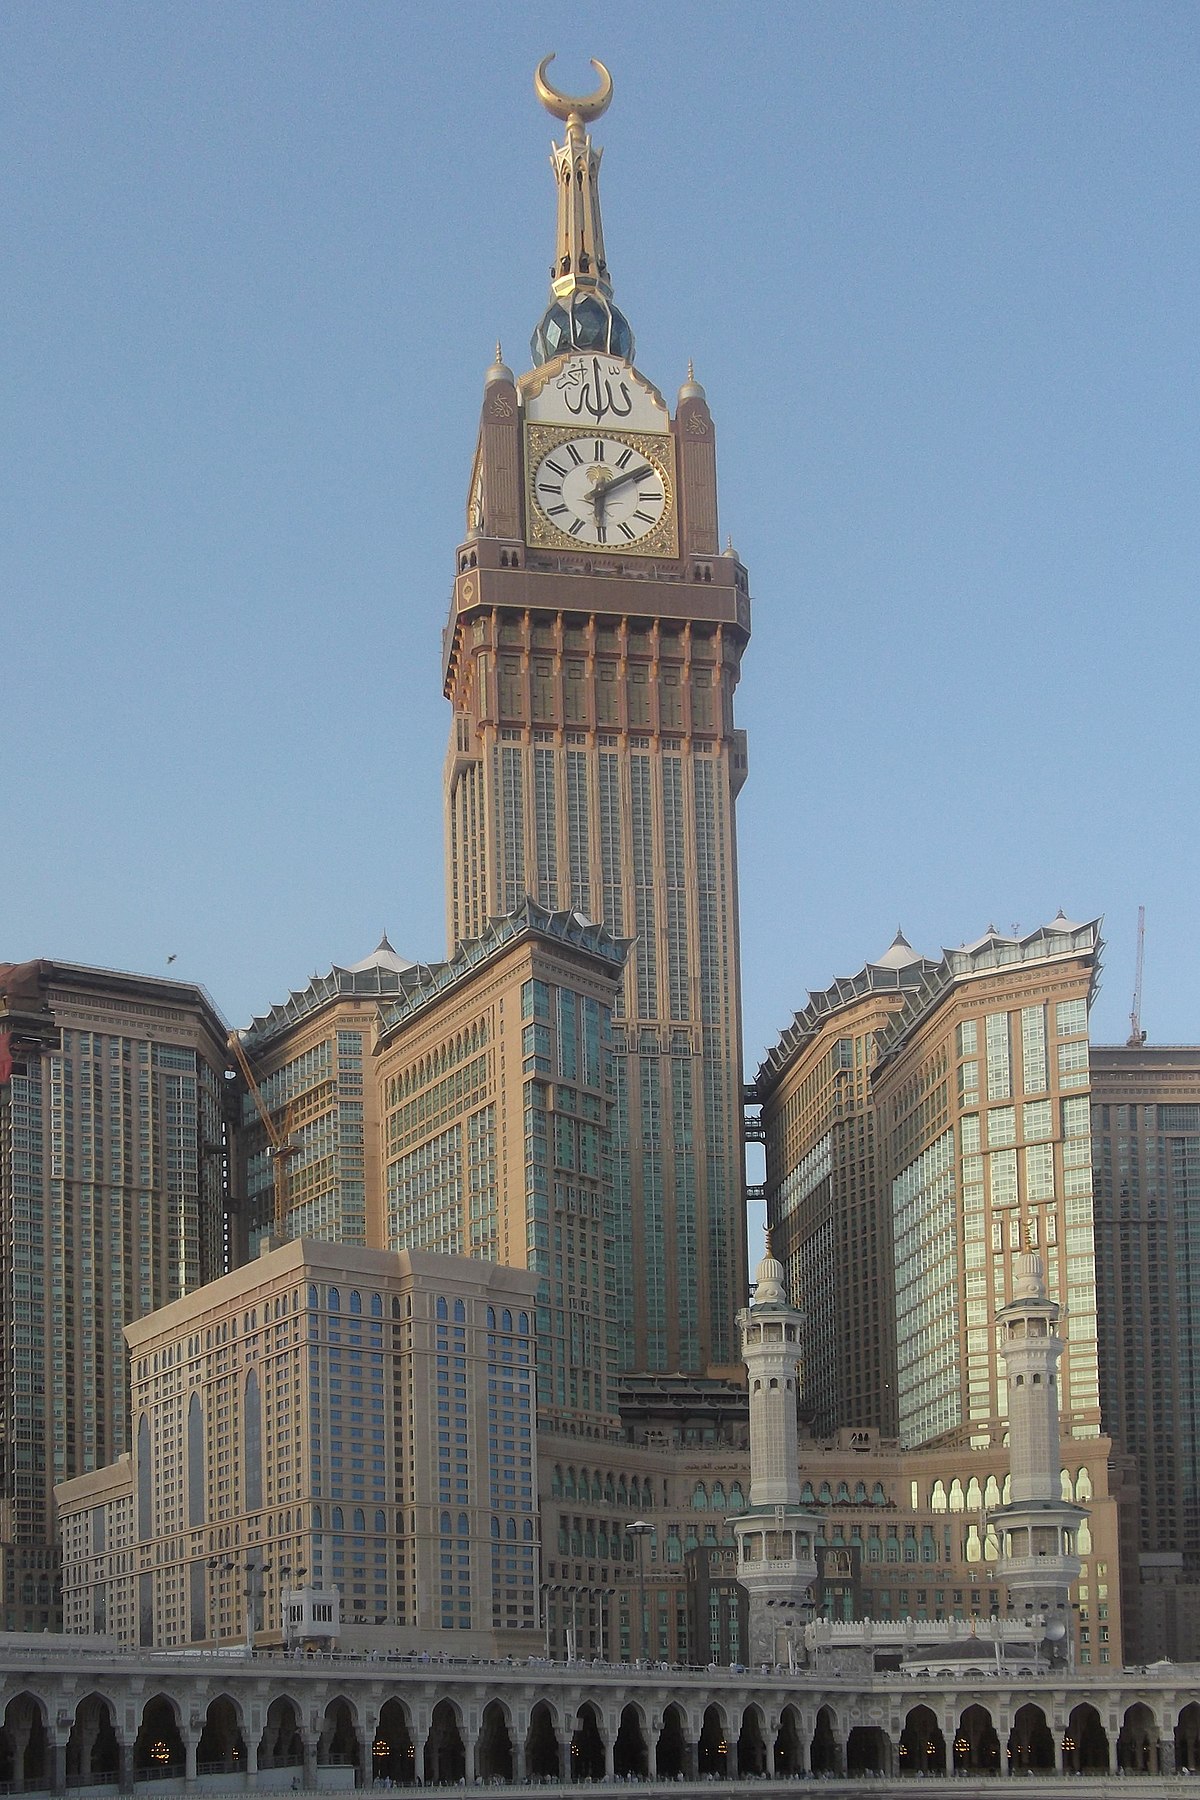 Makkah Royal Clock Tower - Makkah